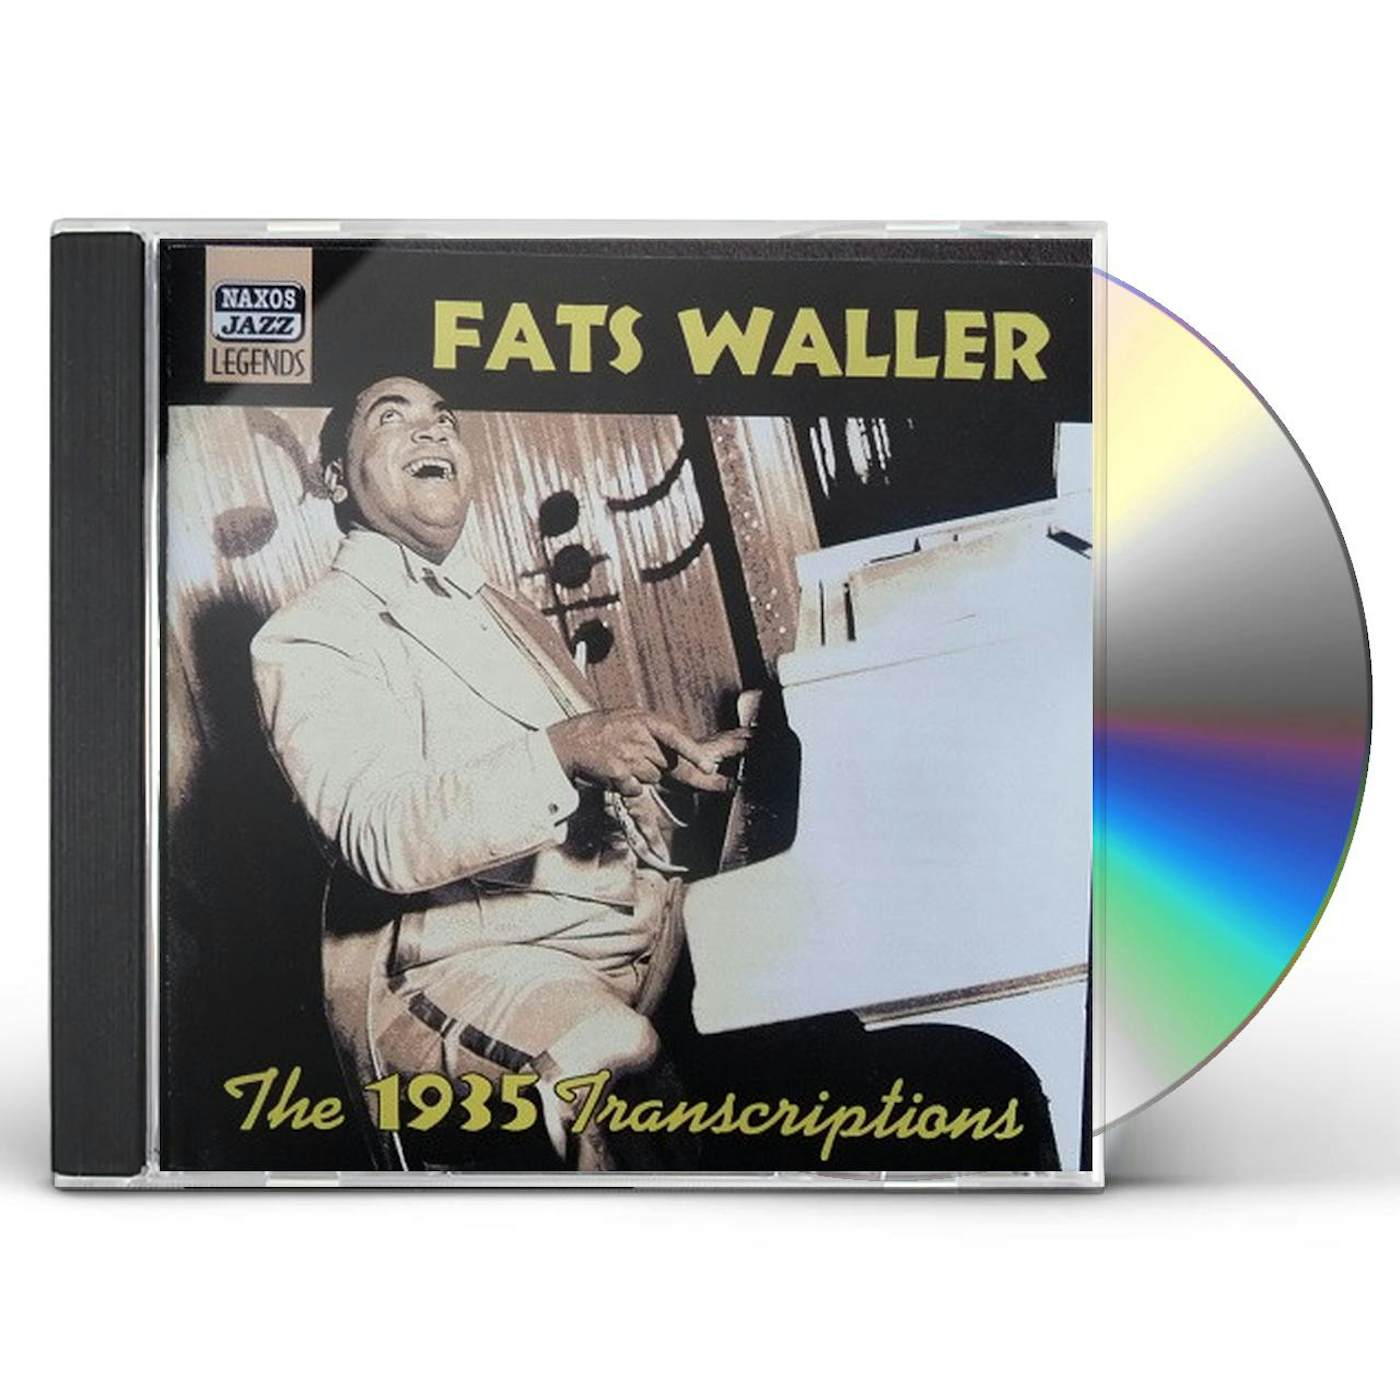 Fats Waller 1935 TRANSCRIPTIONS CD